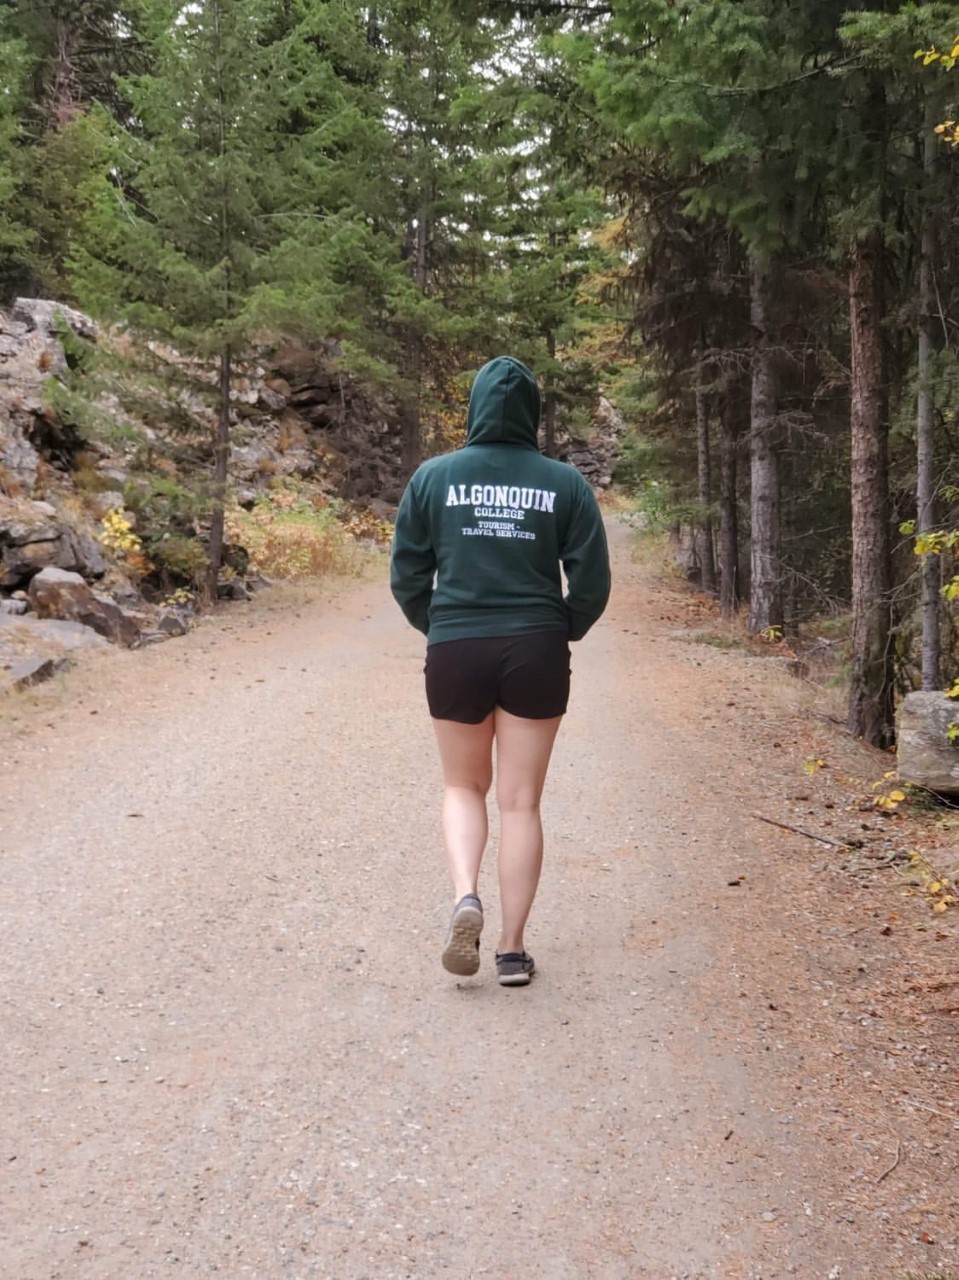 Aubertin exploring a Canadian National Park.